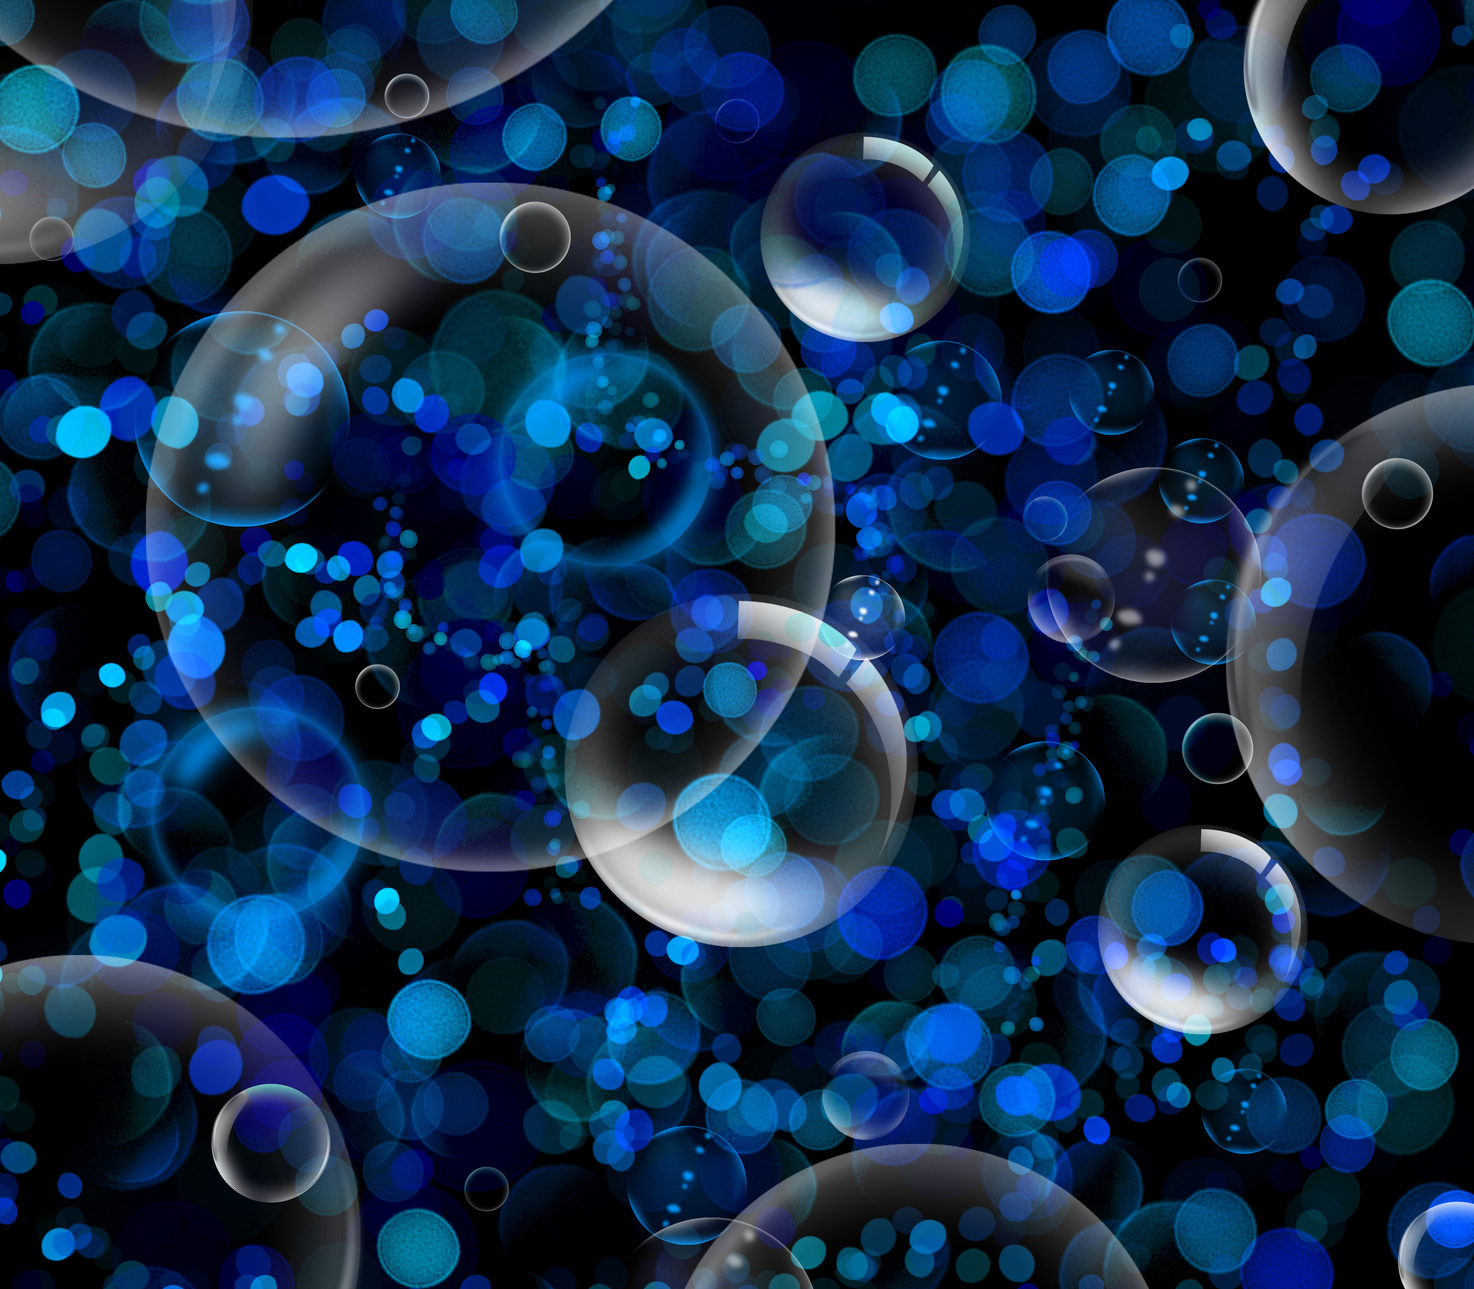 Spacebubbles